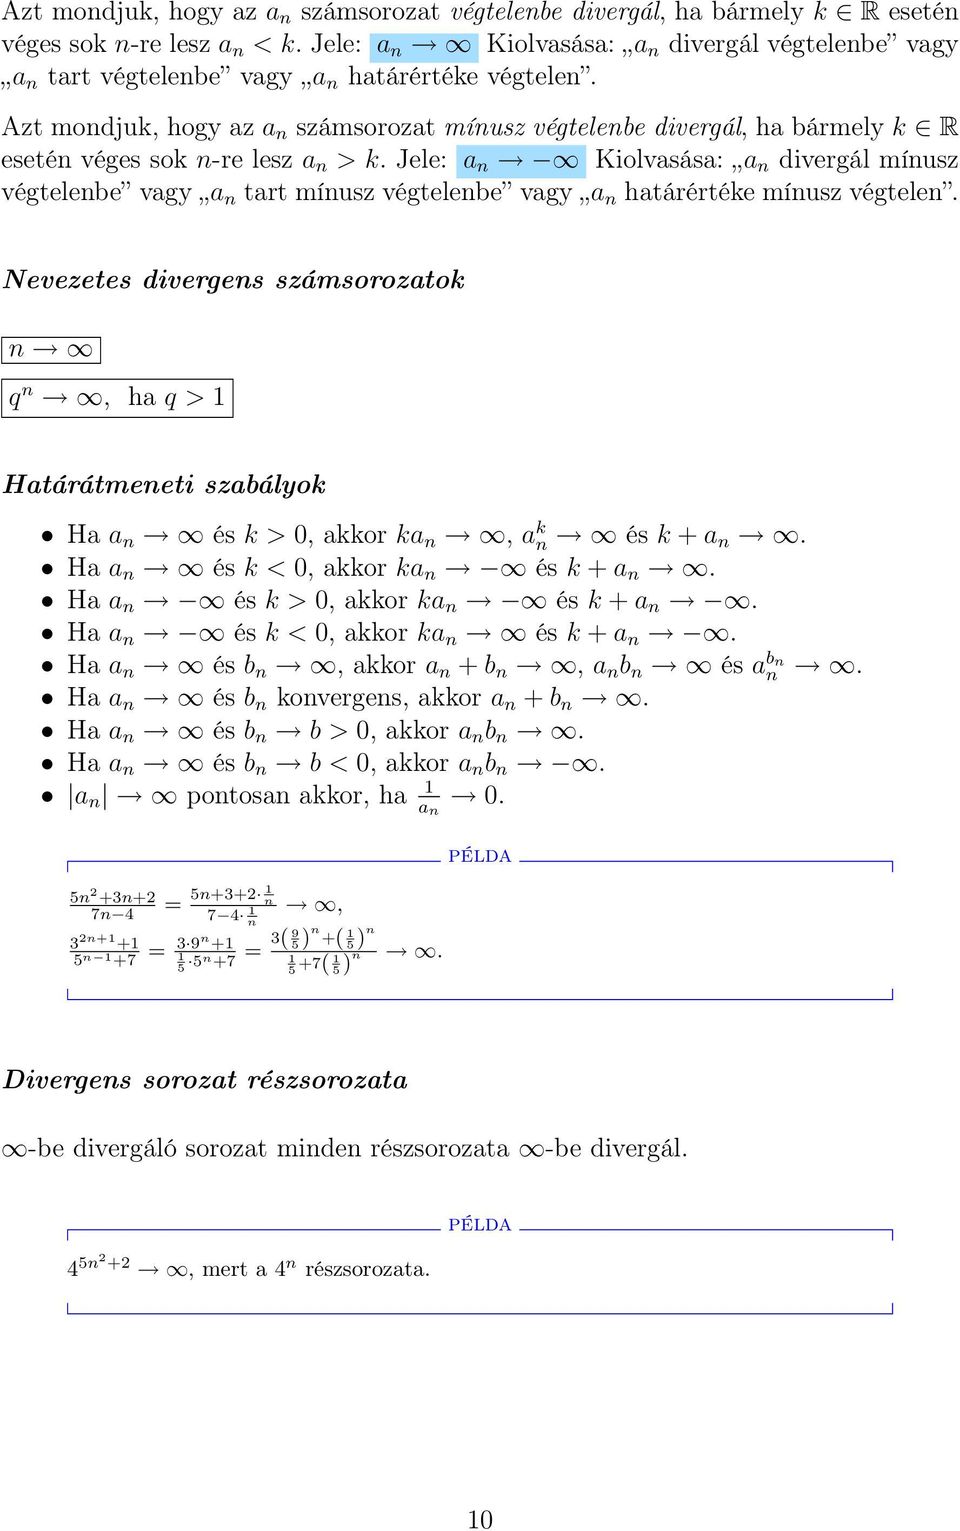 Gazdasági számítások matematikai alapjai - PDF Free Download